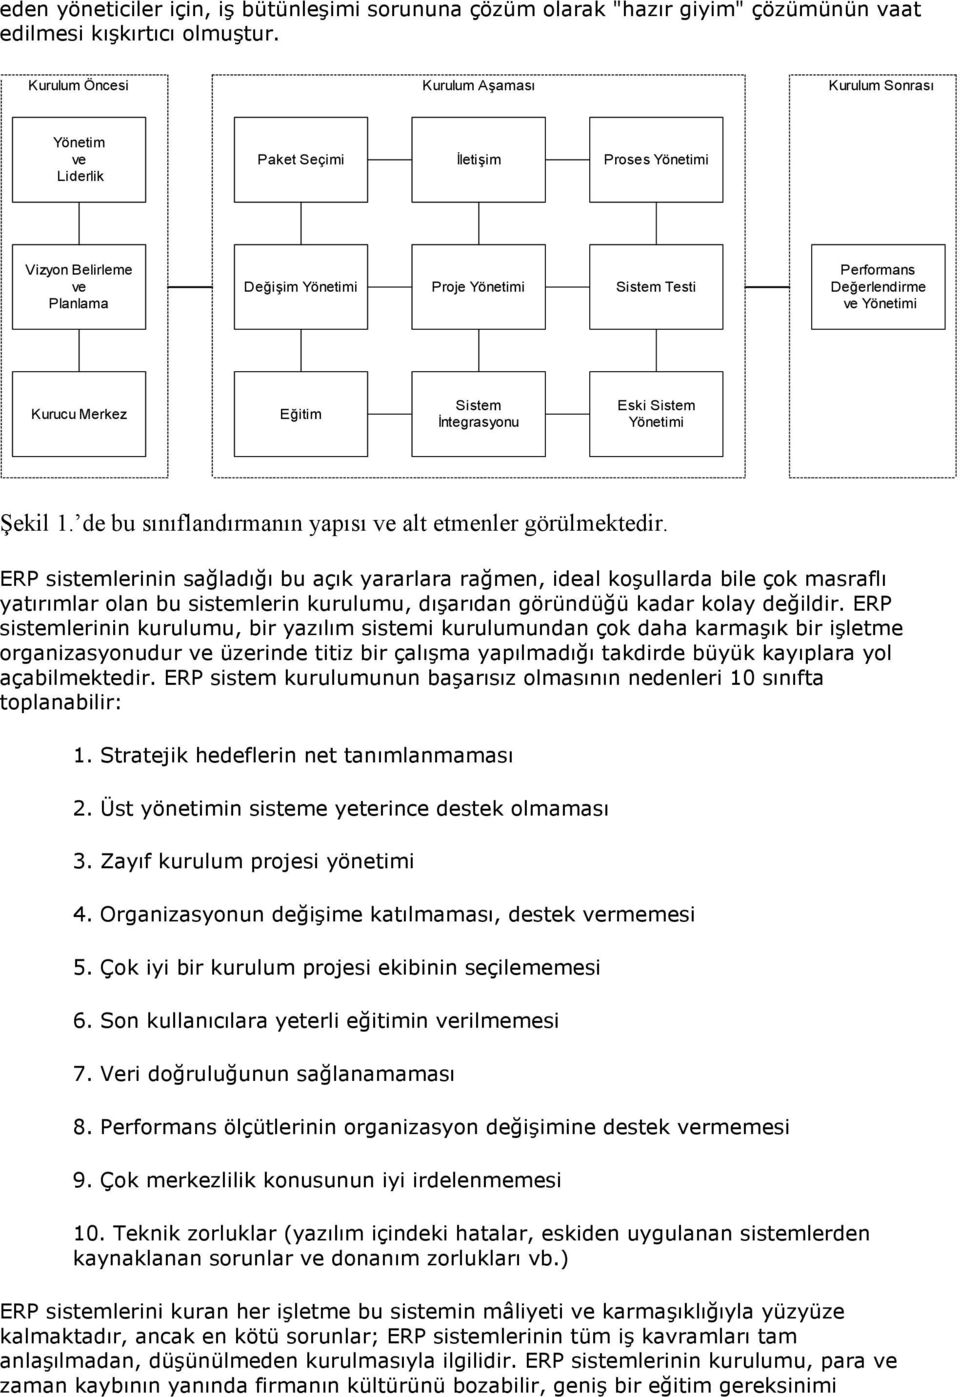 Değerlendirme ve Yönetimi Kurucu Merkez Eğitim Sistem Đntegrasyonu Eski Sistem Yönetimi Şekil 1. de bu sınıflandırmanın yapısı ve alt etmenler görülmektedir.